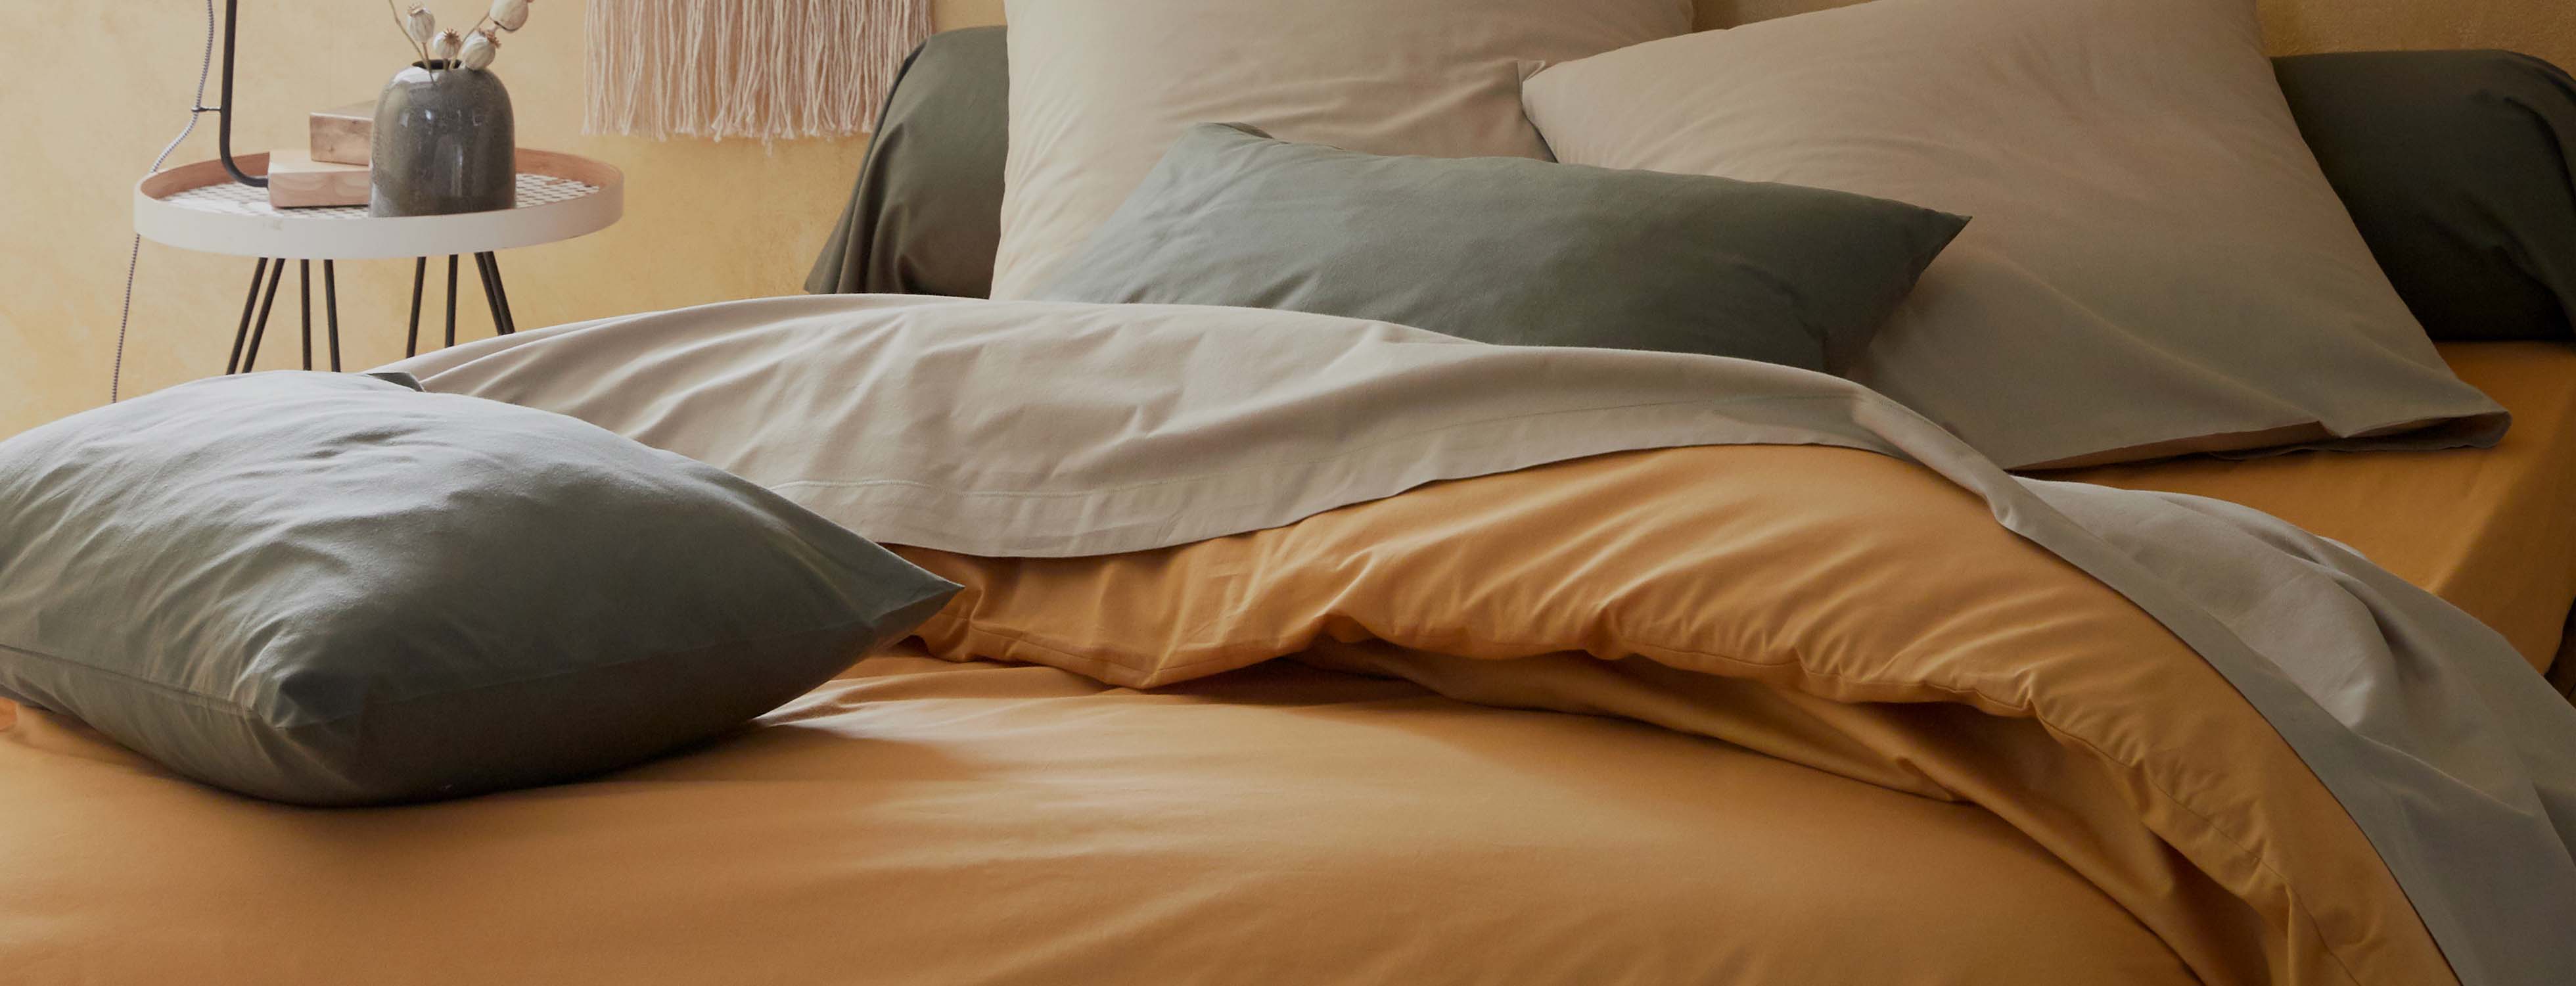 Linge de lit en coton Calanques, achat en ligne | alinea.com